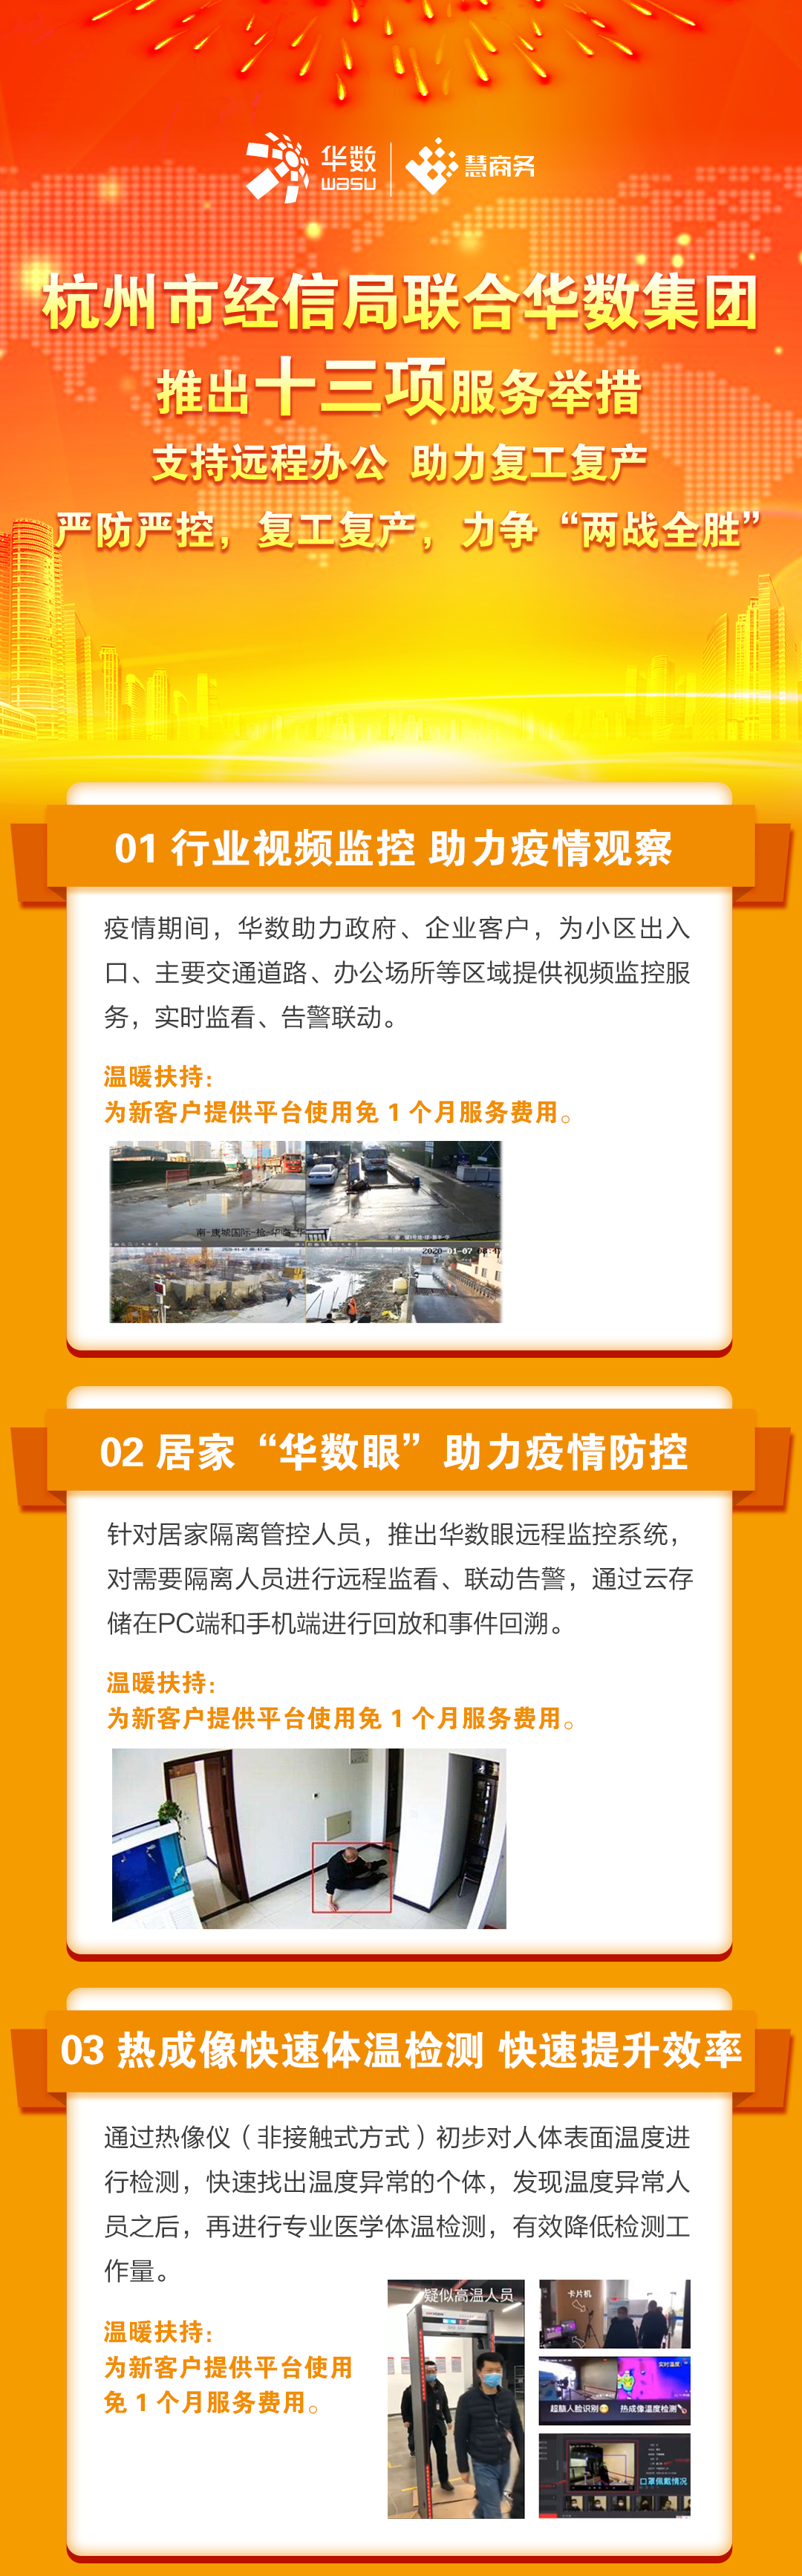 杭州市经信局联合华数集团推出十三项服务举措助力复工